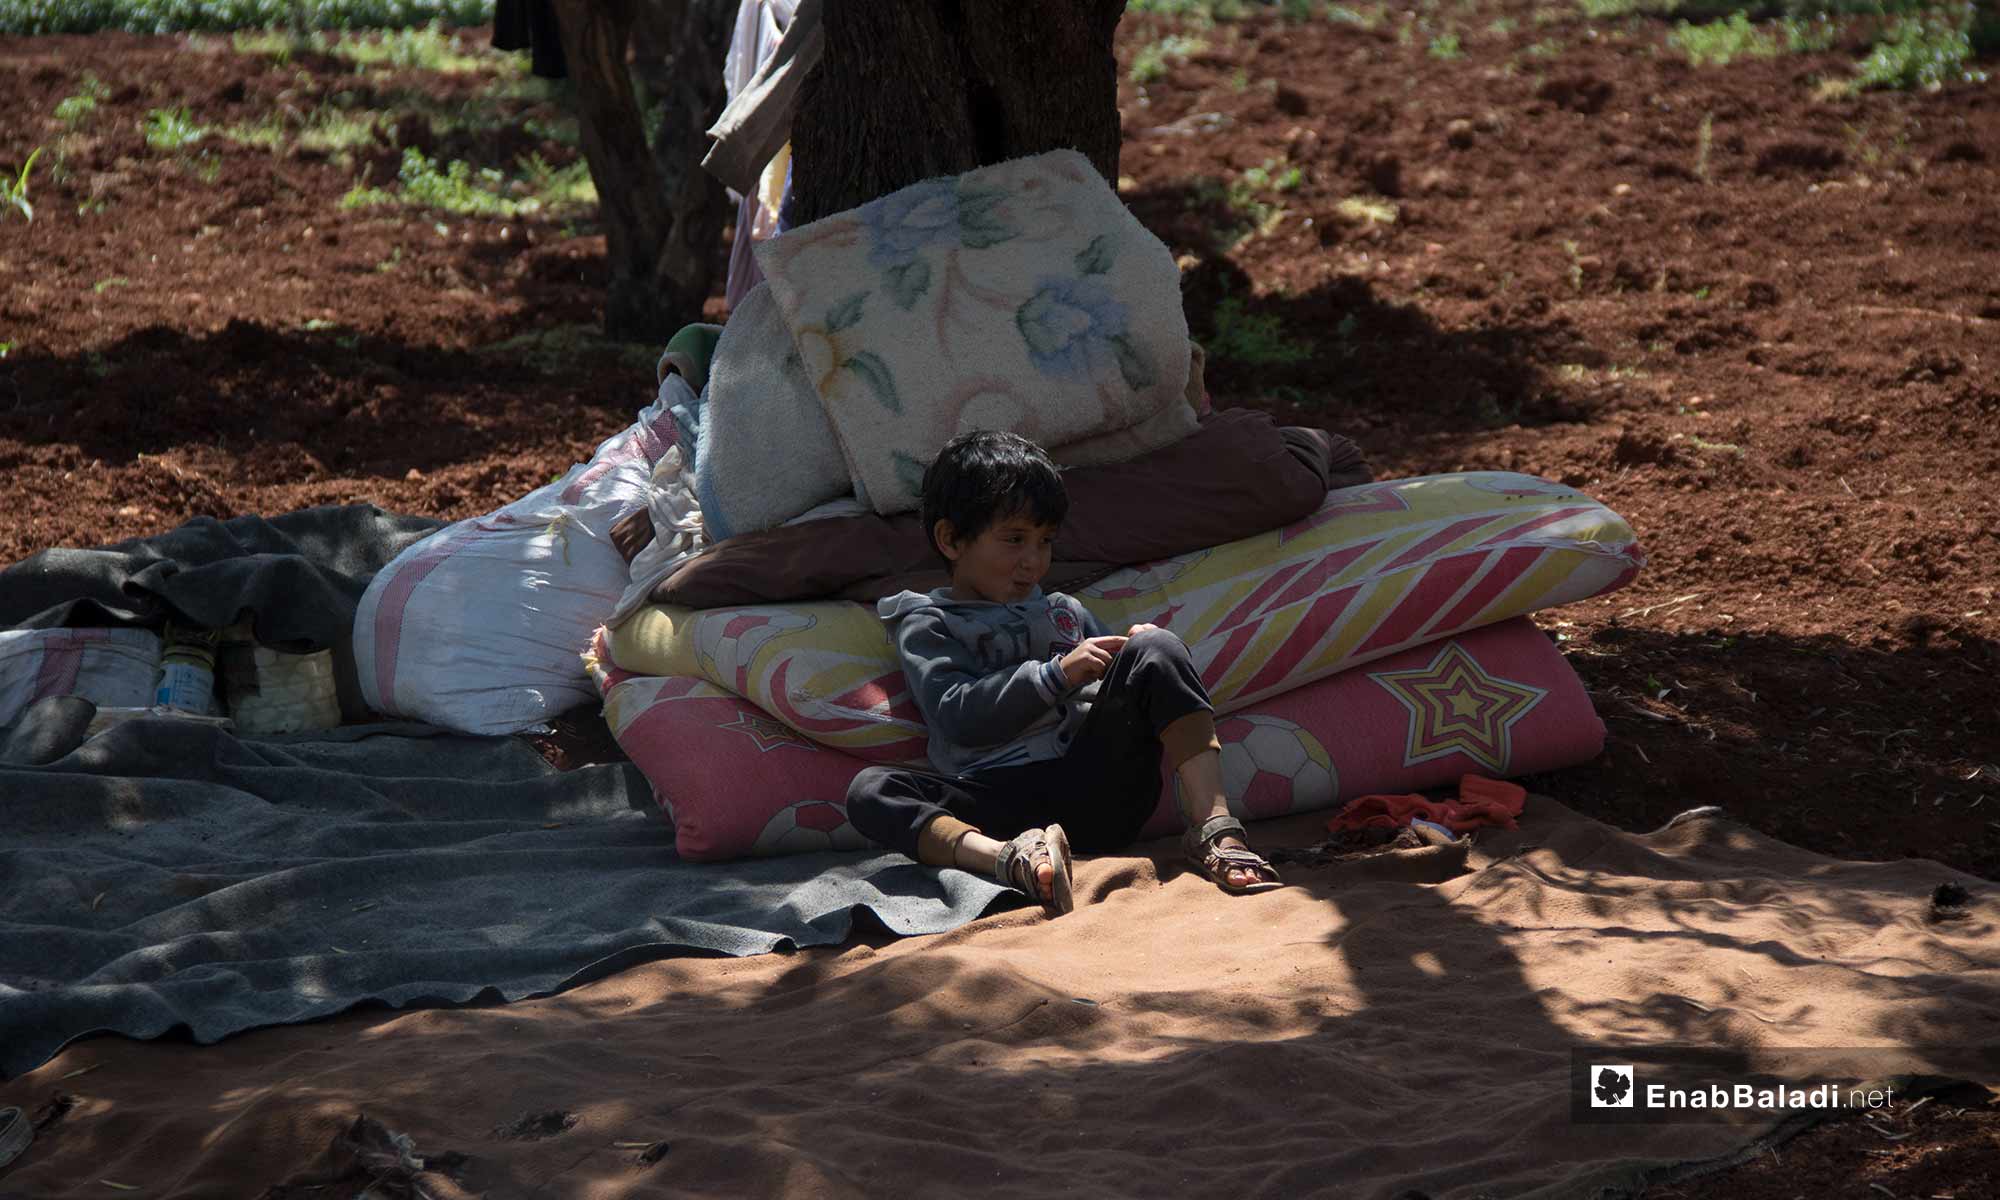 نزوح طفل مع أهله إلى الحدود السورية التركية هربًا من القصف - 3 من آيار 2019 (عنب بلدي)